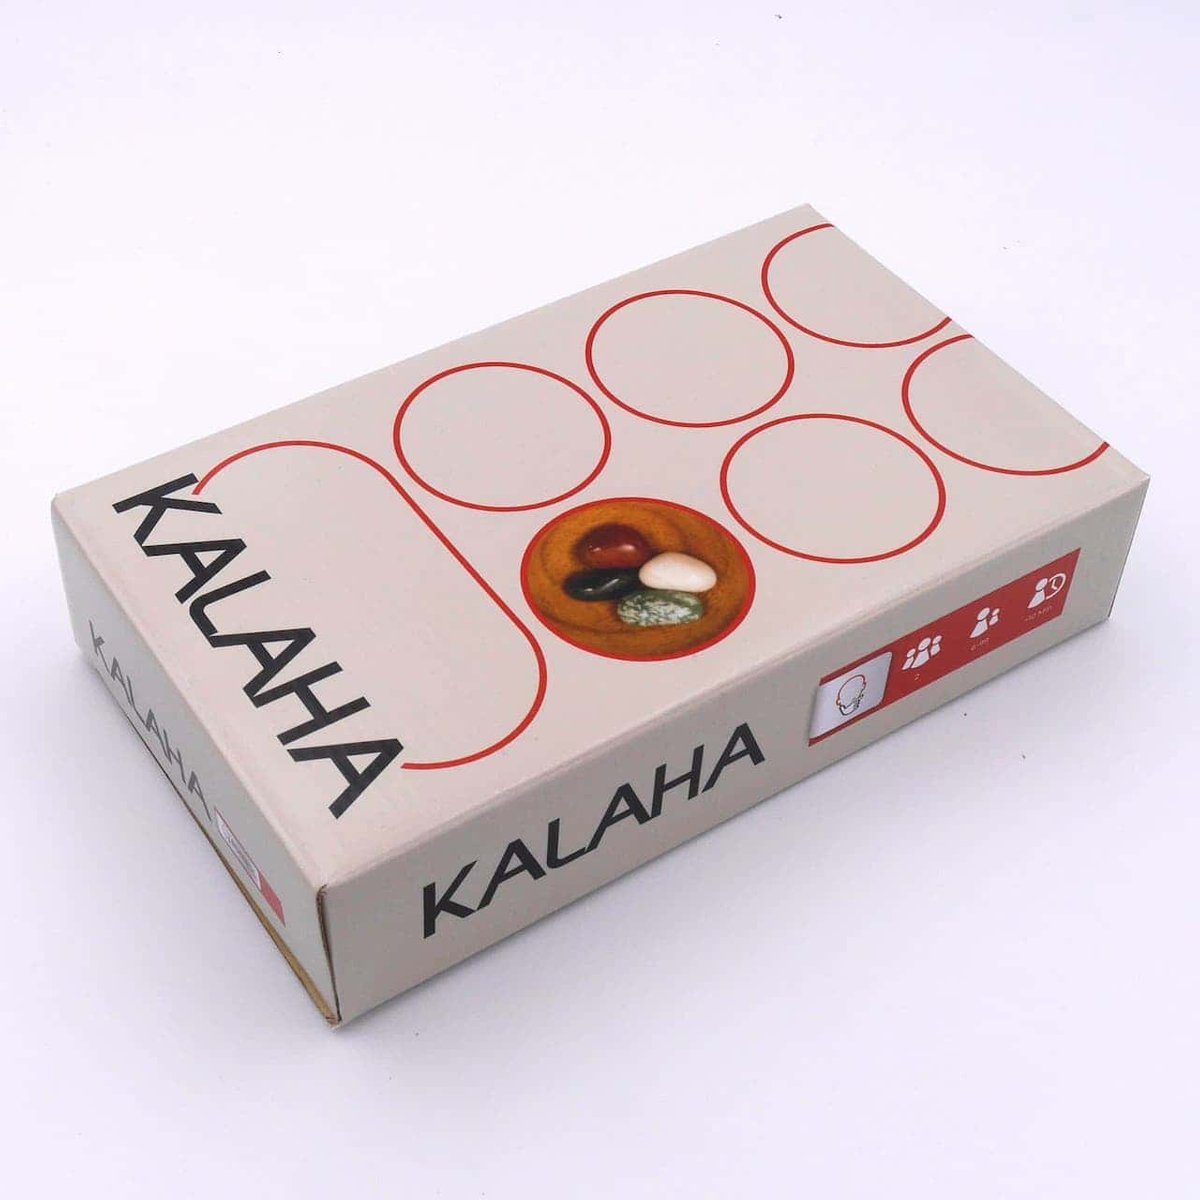 ROMBOL Denkspiele zweifarbig, inkl. Kalaha - Brettspiel Steinchenspiel Spiel, hochwertiges Halbedelsteine Holzspiel Halbedelsteinen